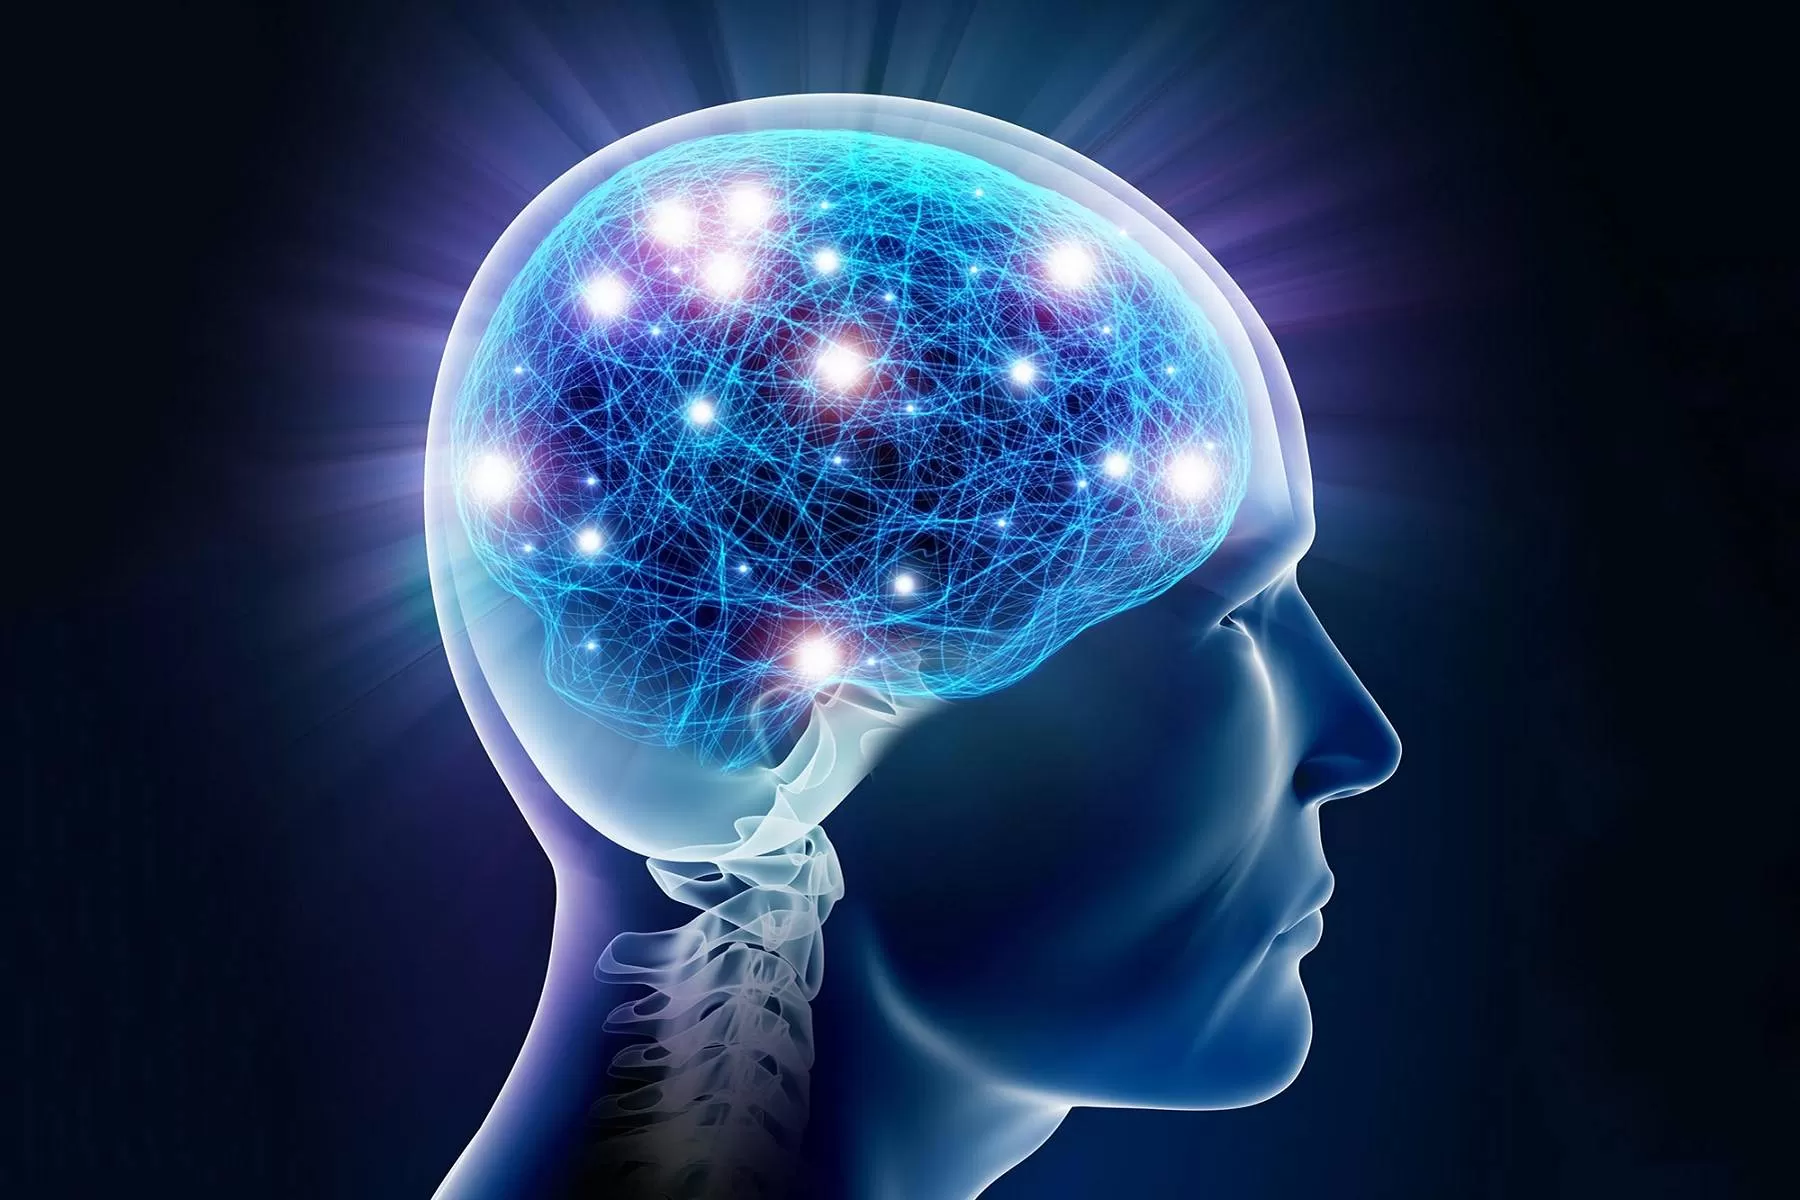 مغز چگونه بین خاطره و ادراک تمایز قائل میشود؟